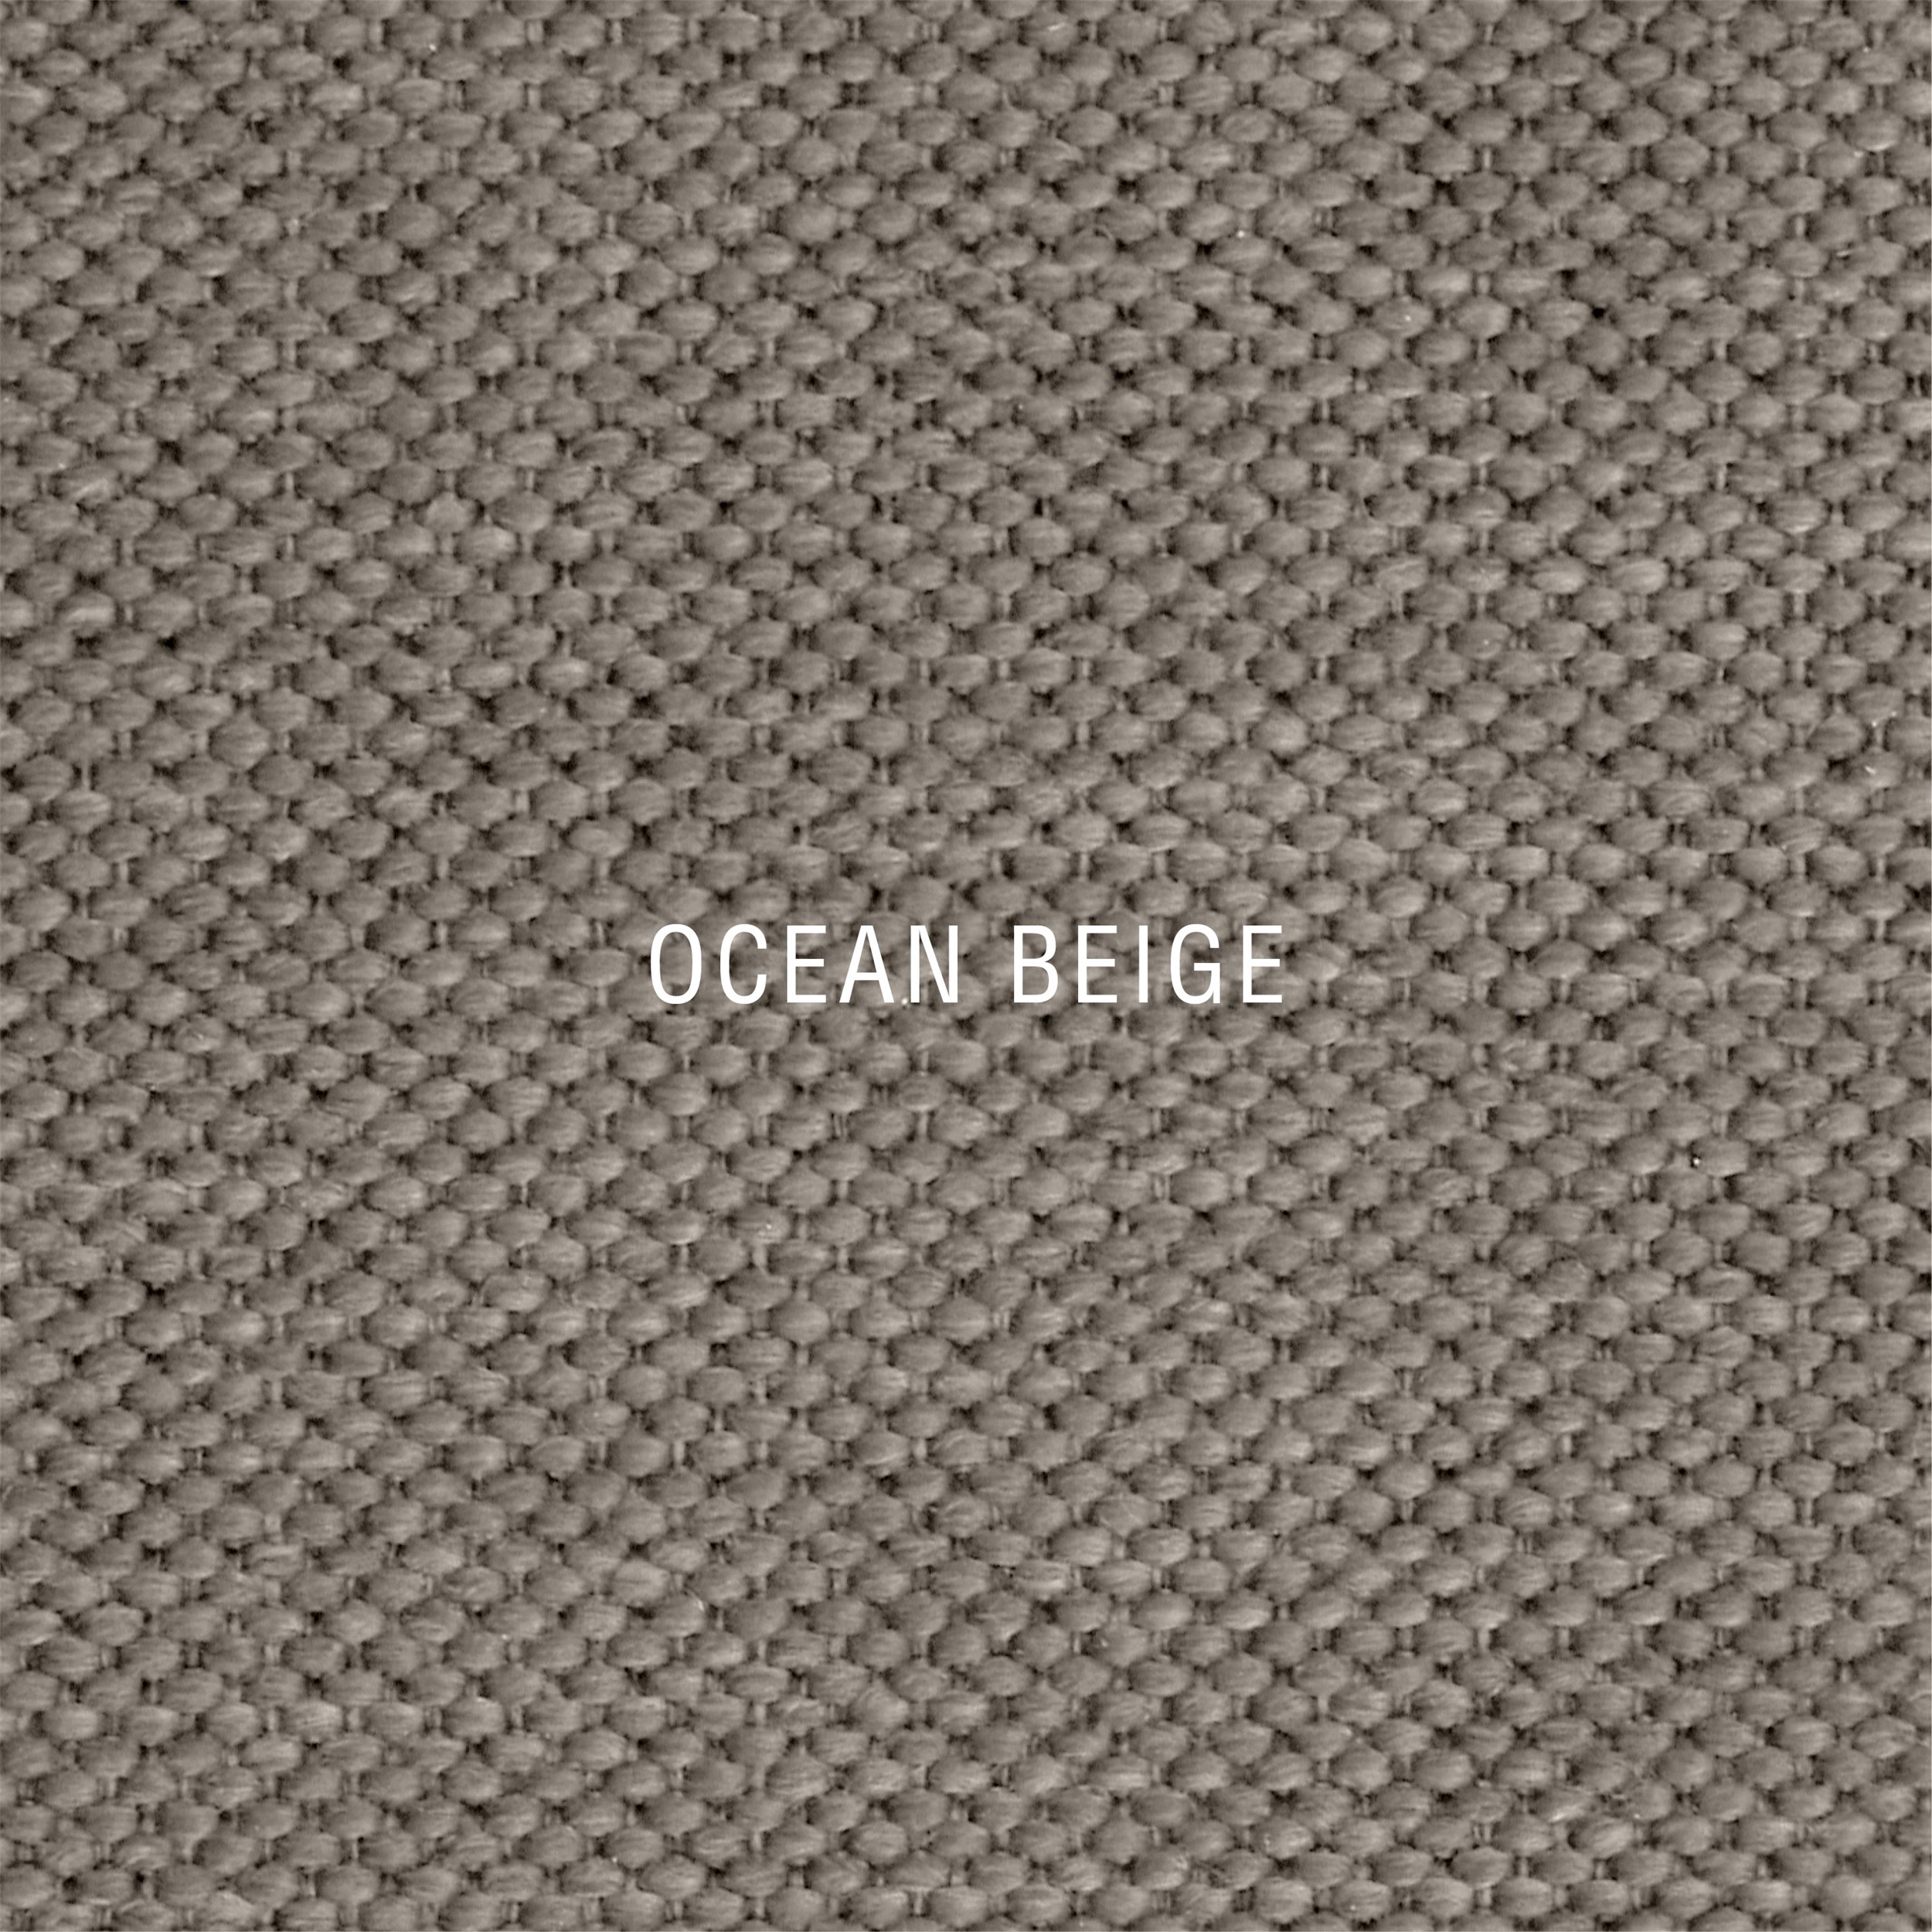 Nocturne Exclusive Ocean Inkl. 8 cm Exclusive Svane topmadras, 180 x 200 cm kontinentalseng